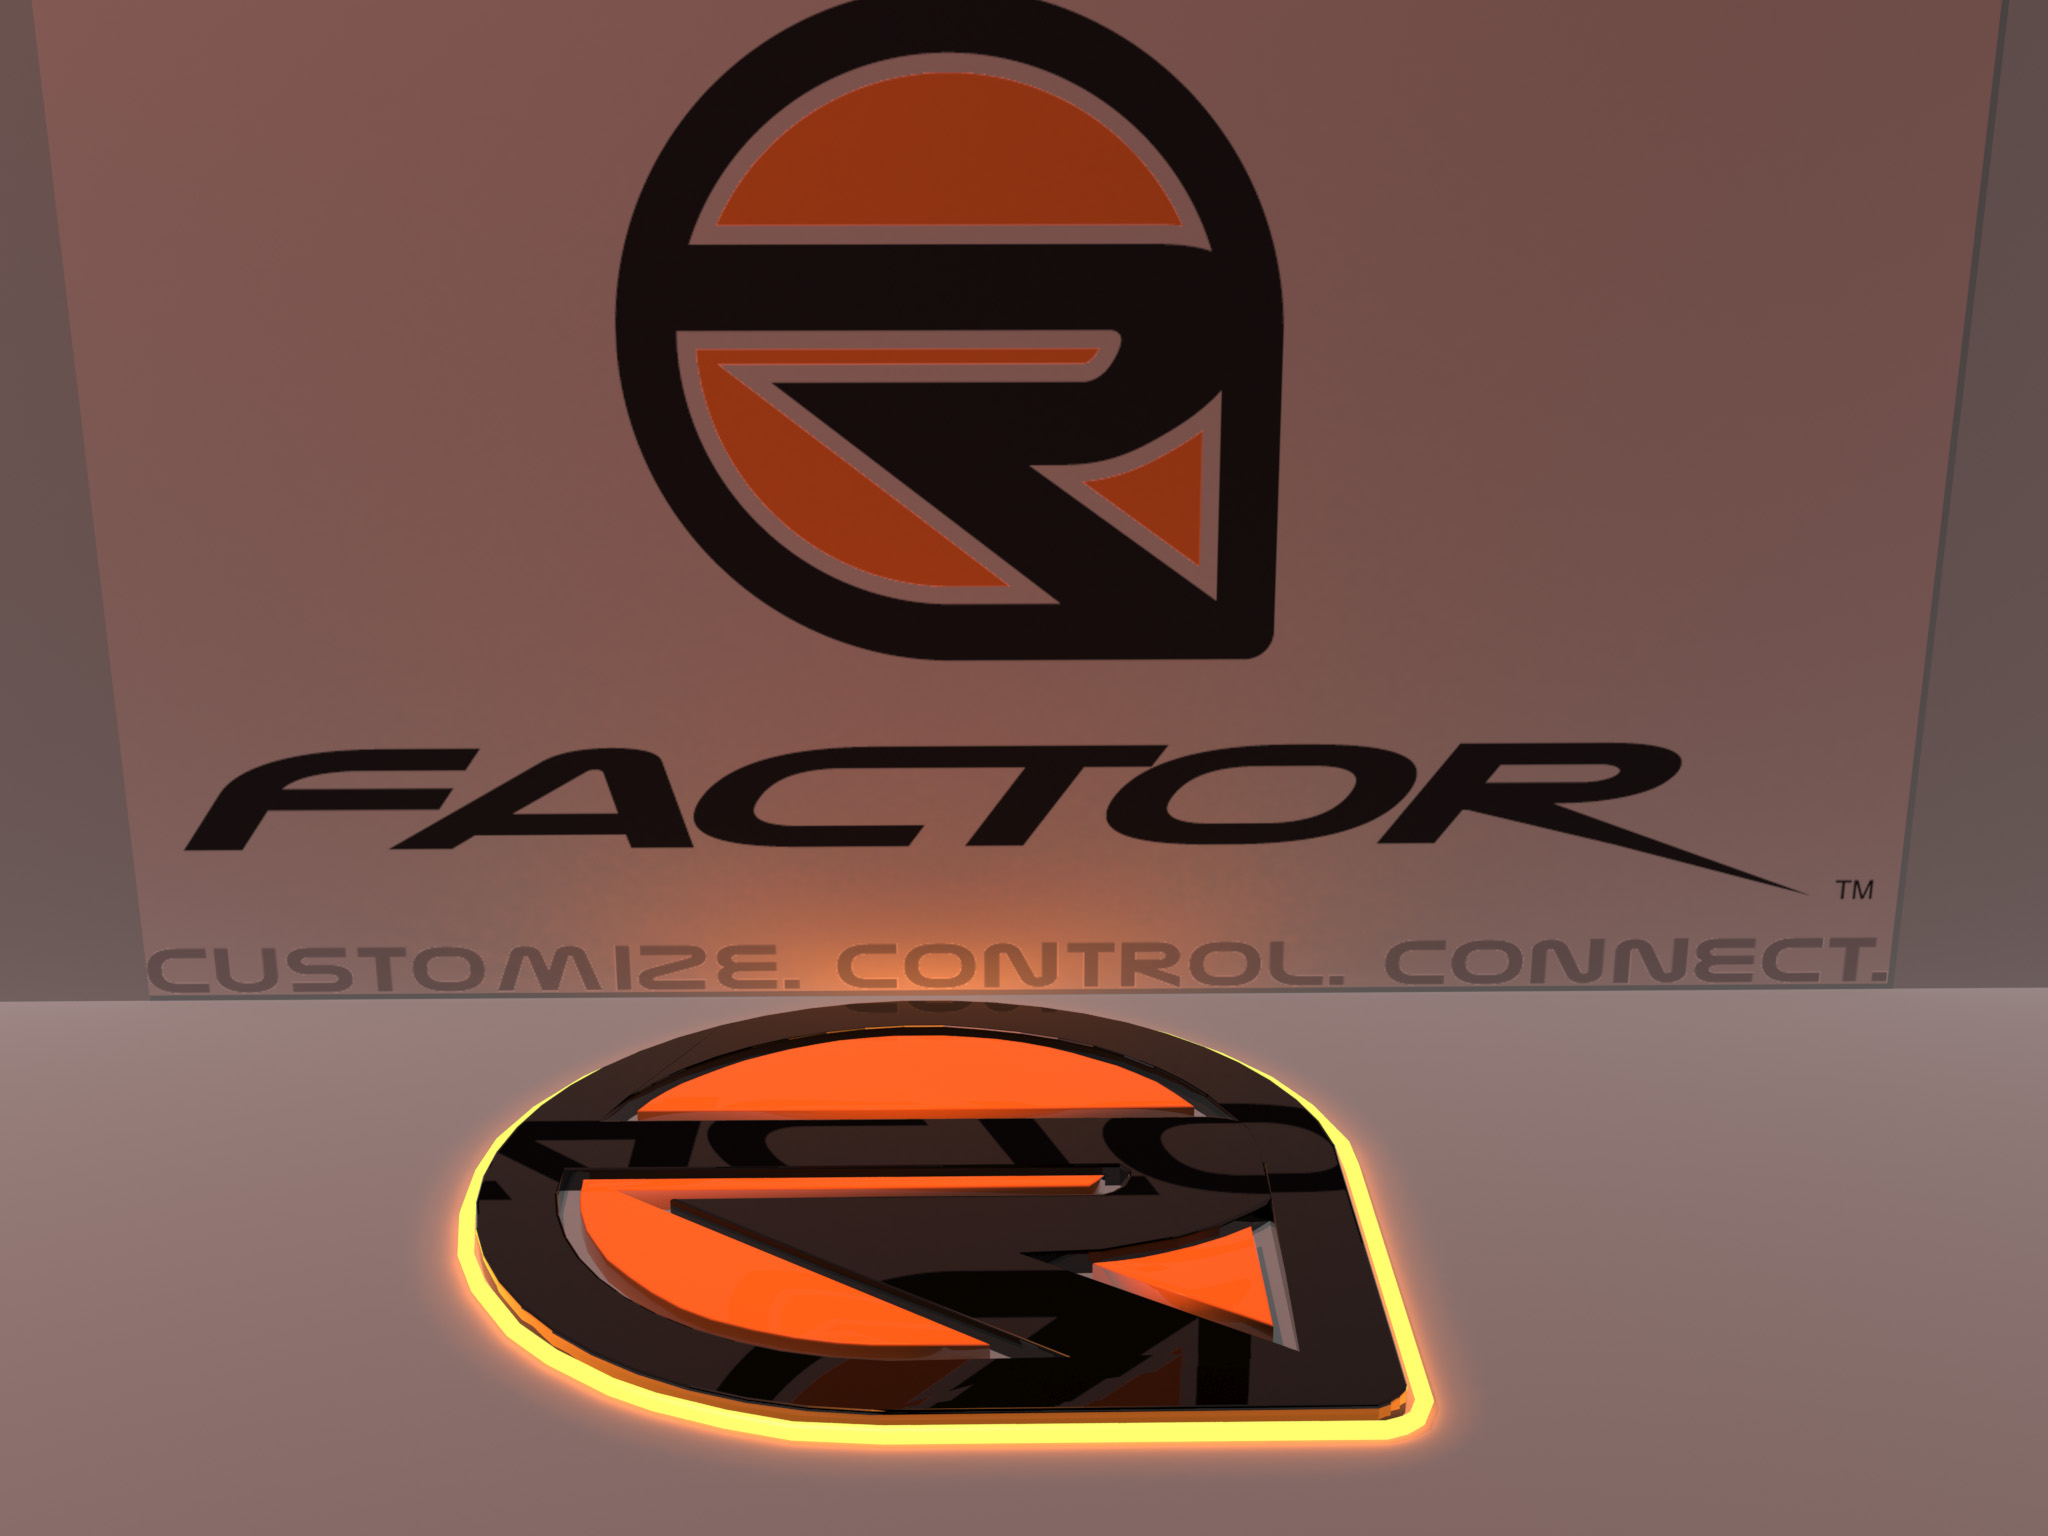 Rfactoe 2 logo scene.jpg